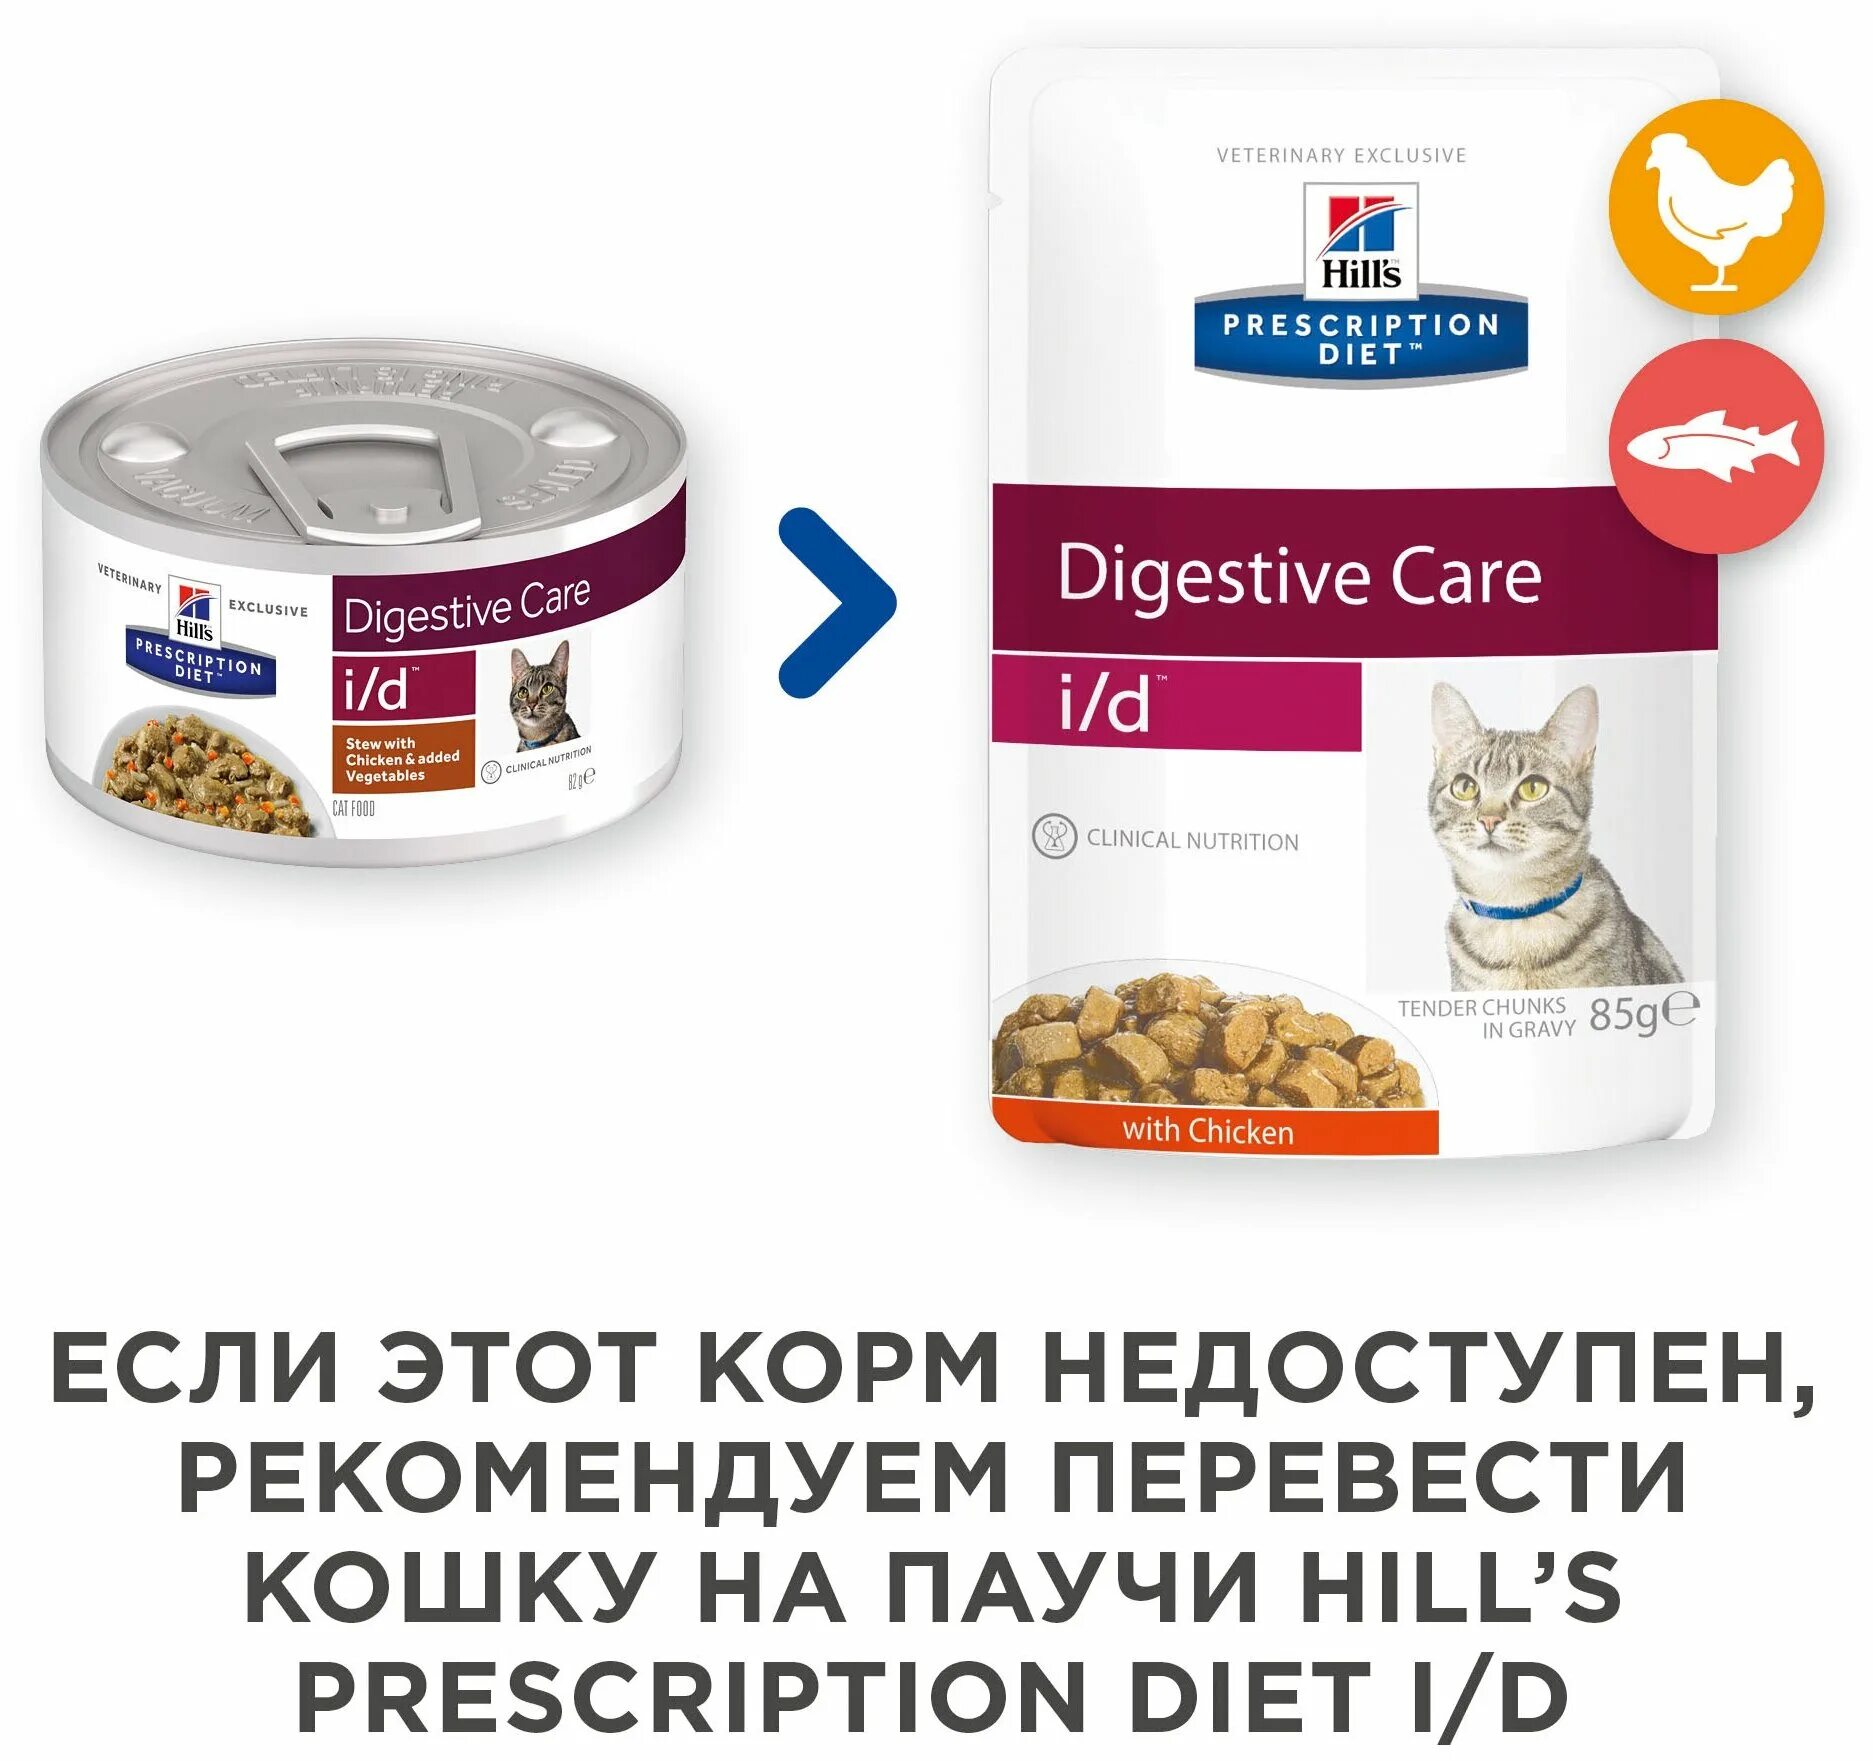 Влажный корм хиллс для кошек. Hill's Prescription Diet Gastrointestinal Biome для кошек упаковка. Hill's Prescription Diet i/d Digestive Care. Hills корм для кошек Digestive Care i/d. Hills Prescription Diet i/d для кошек.